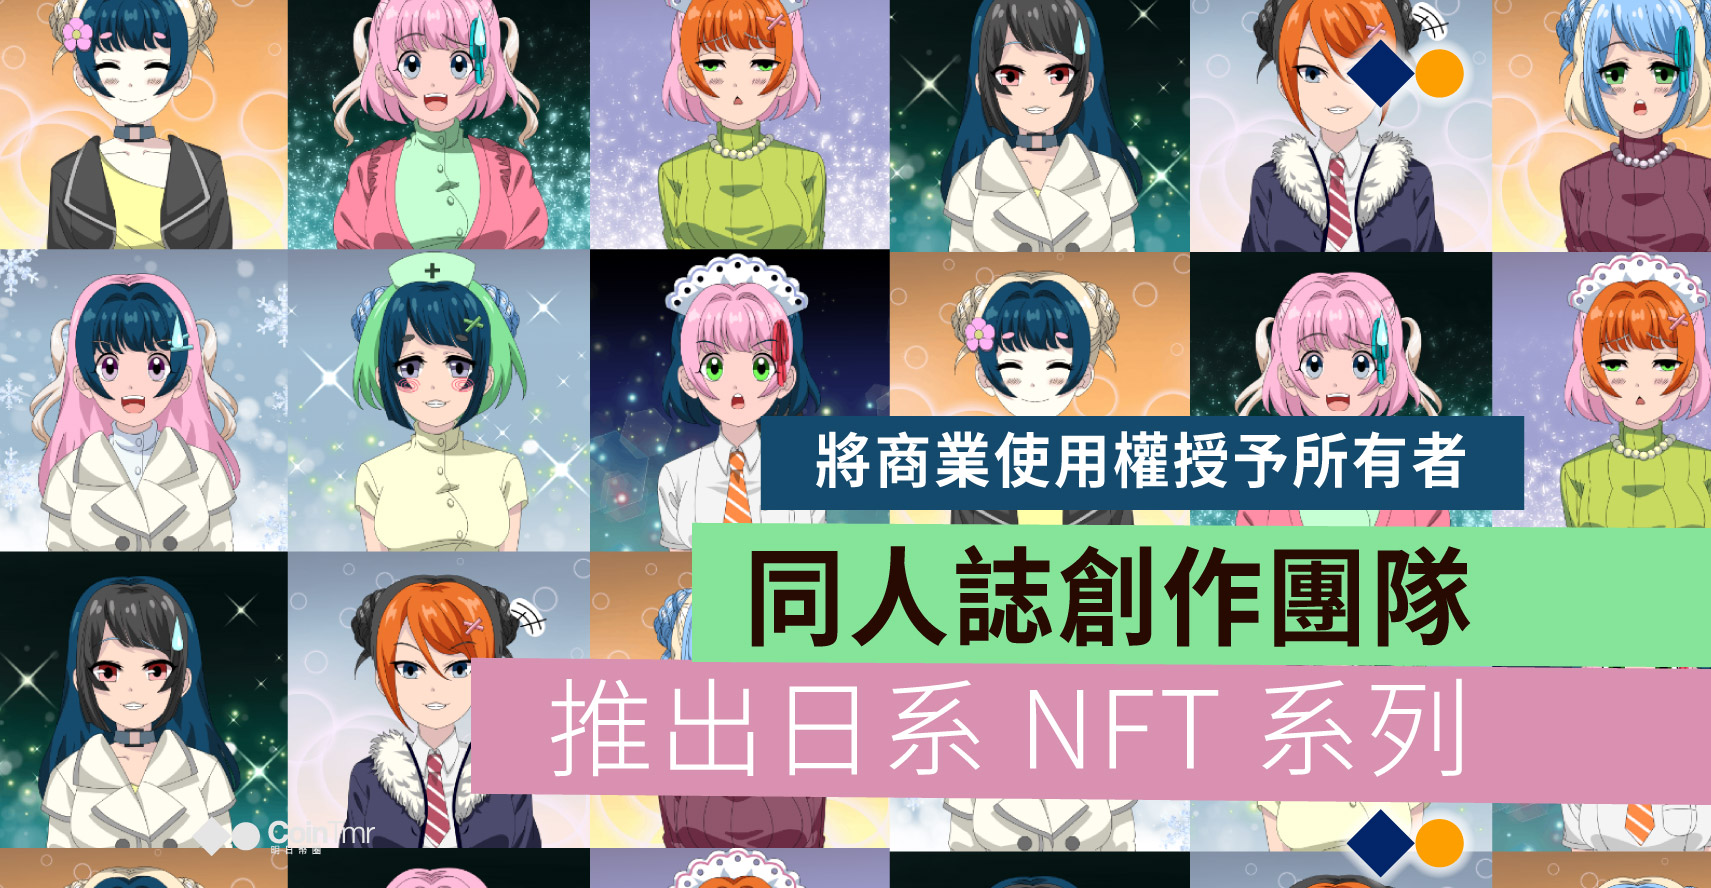 同人誌創作團隊推出日系anime Girls Nft 系列 將商業使用權授予所有者 Cointmr 明日幣圈